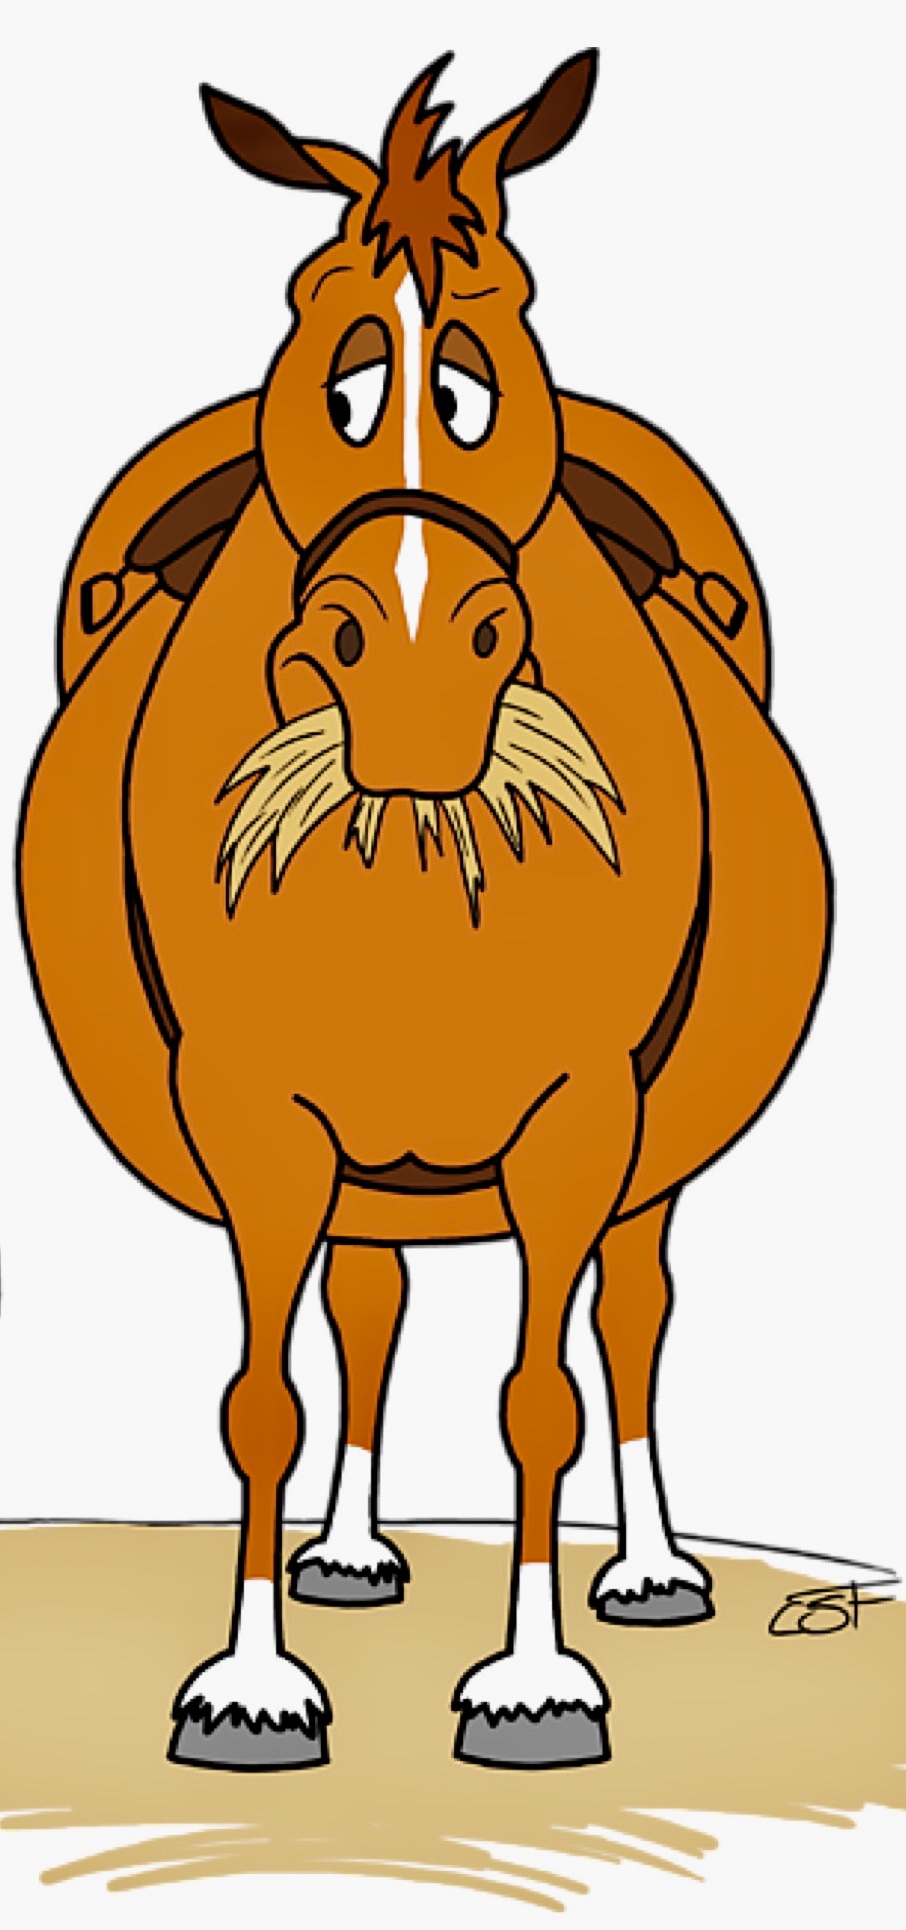 Funny Fat Cartoon Horse